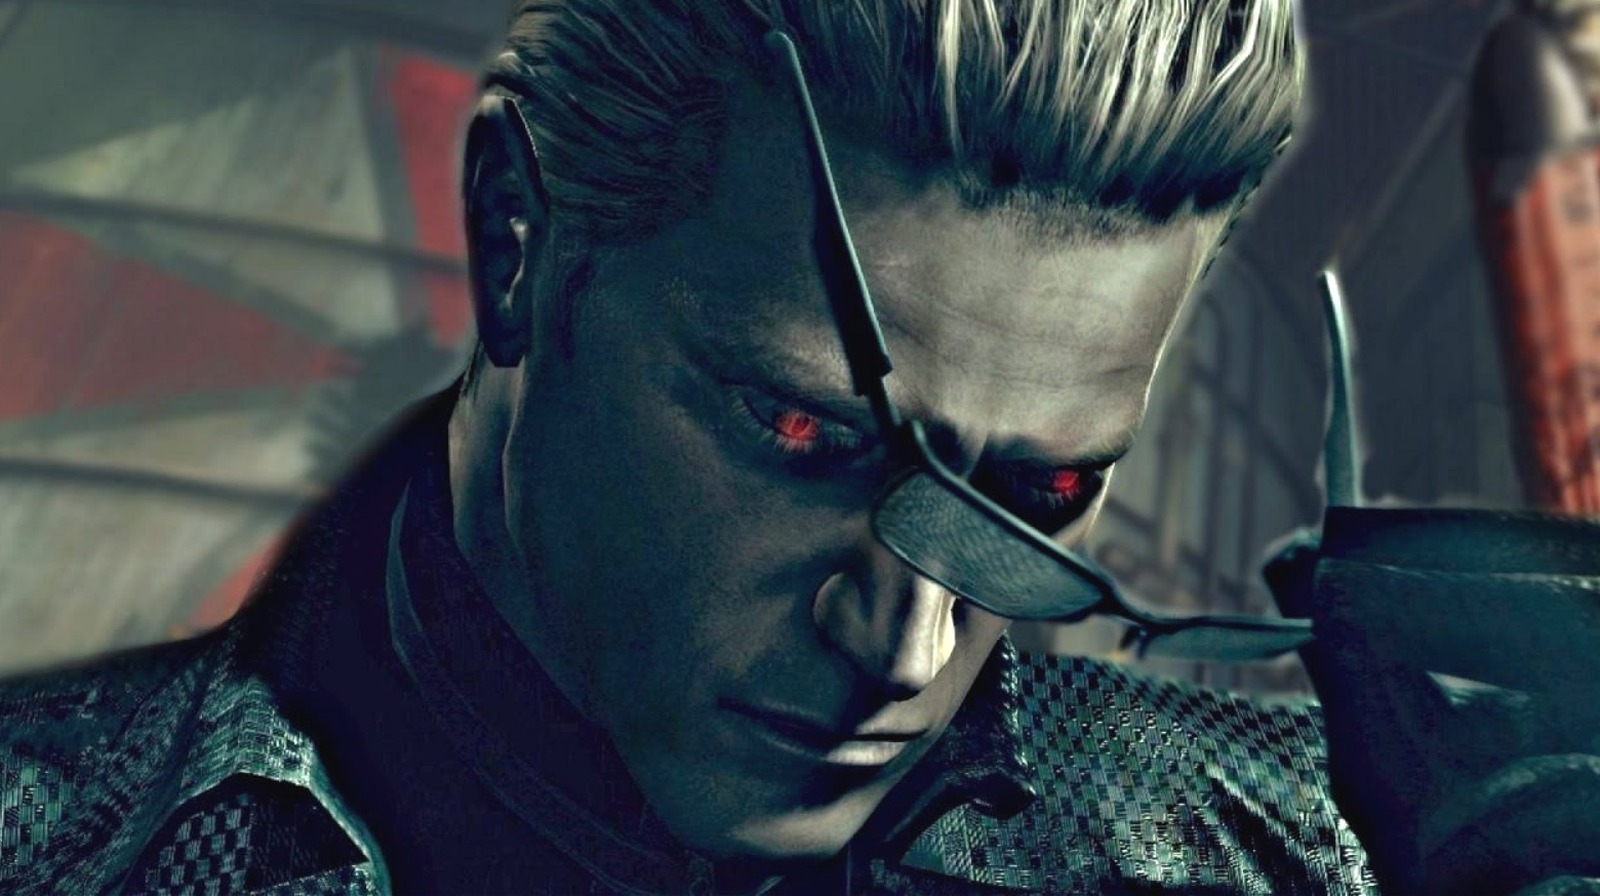 Resident Evil 4 Remake (Biohazard RE:4) - Voice Actor List – SAMURAI GAMERS